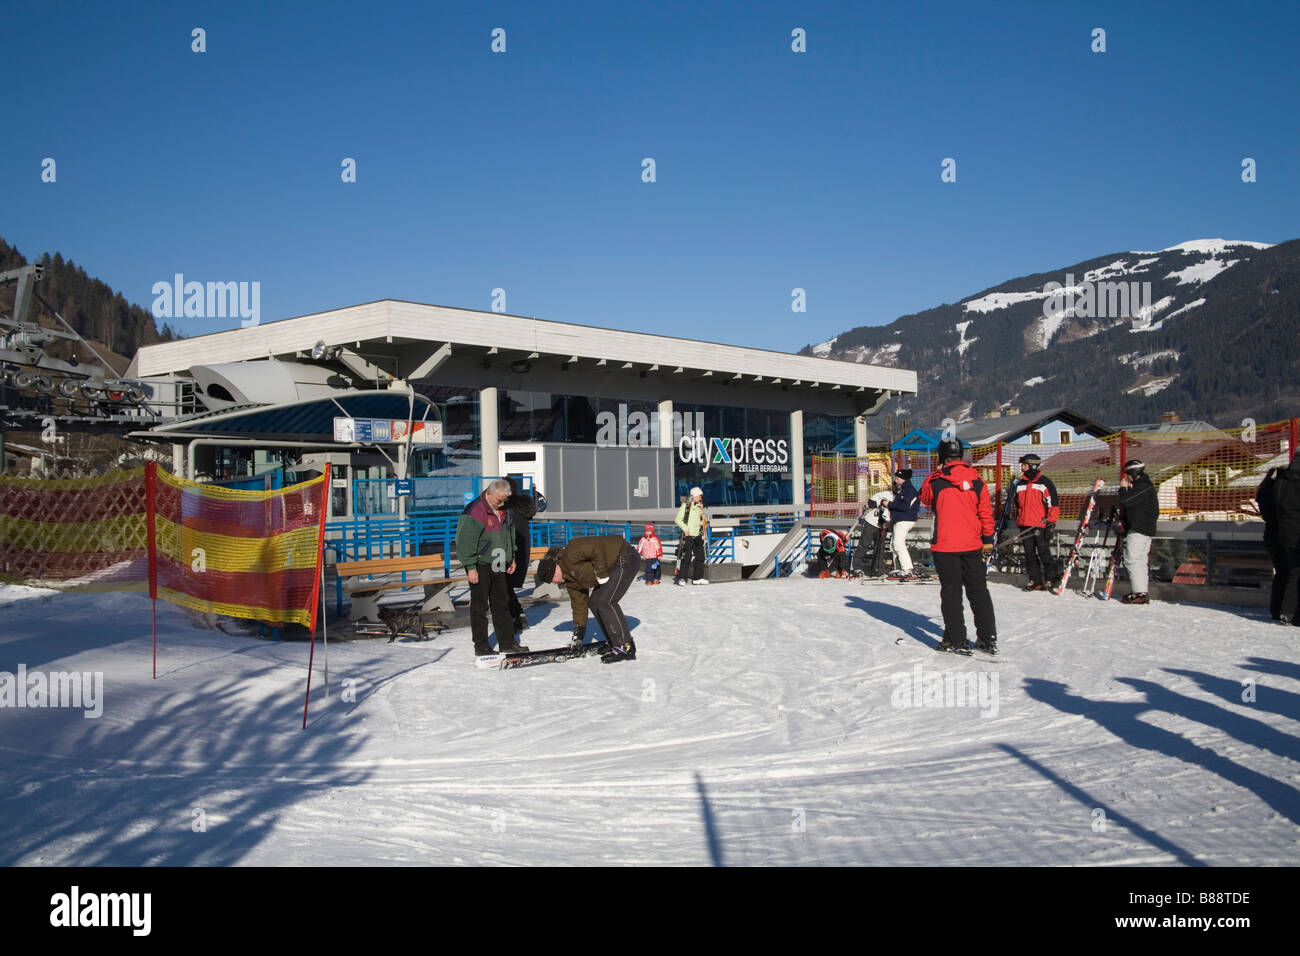 Zell am sehen Österreich EU Januar Skifahrer am Ende des Ski Pisten von City Express die Talstation der Seilbahn Stockfoto